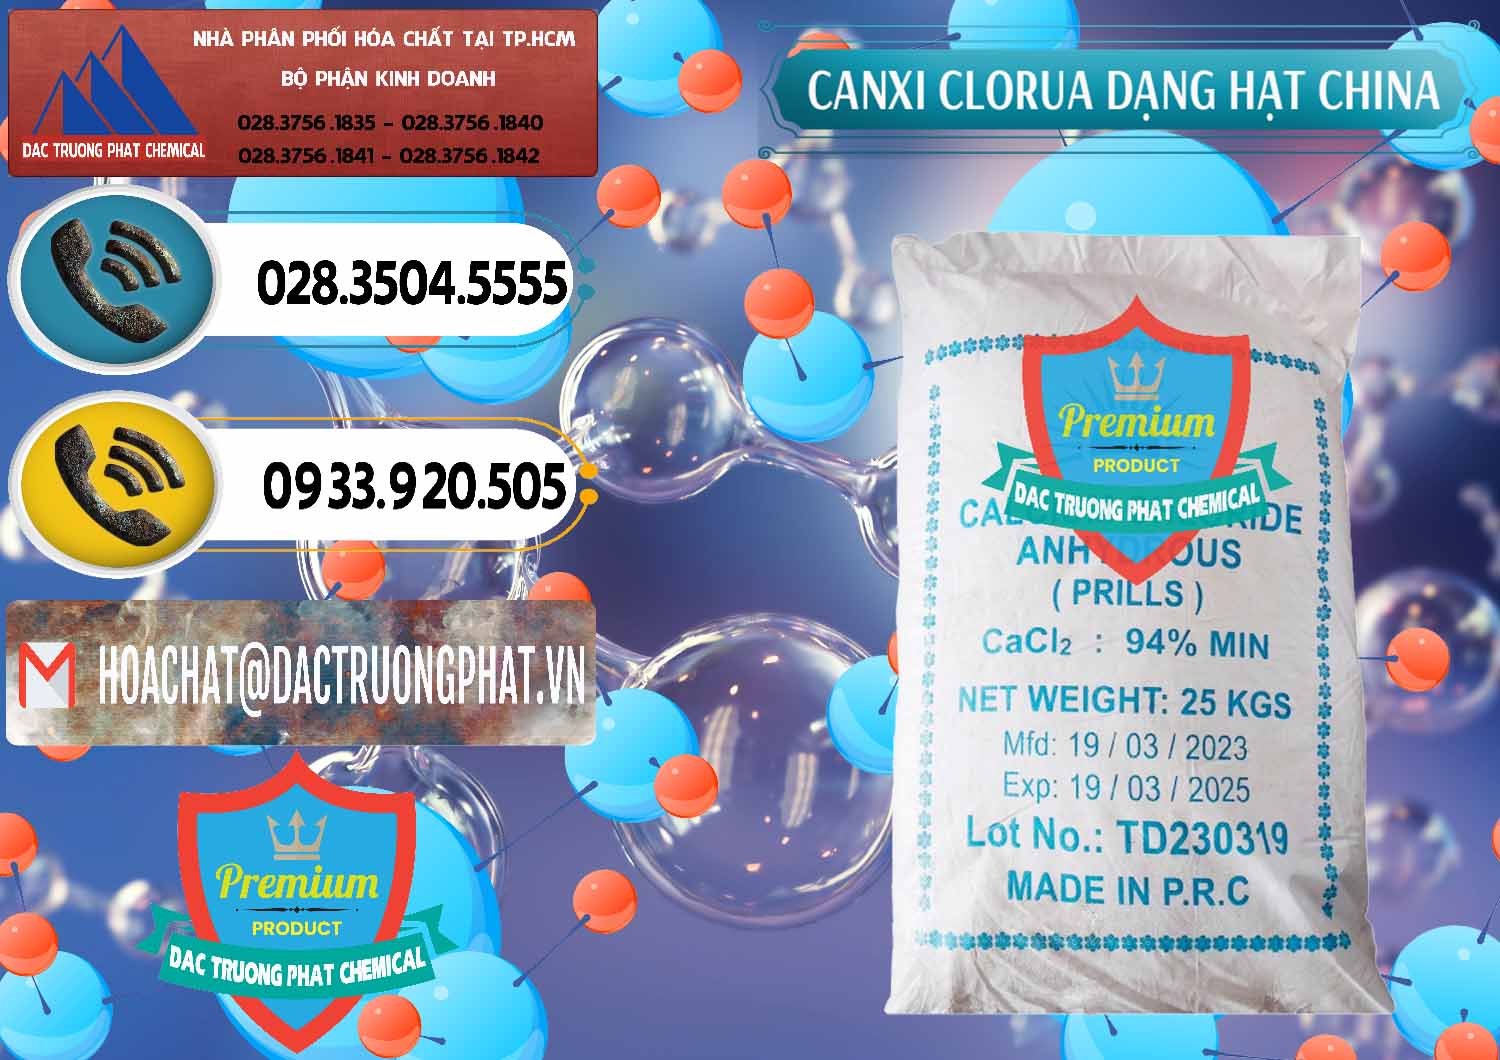 Công ty chuyên nhập khẩu - bán CaCl2 – Canxi Clorua 94% Dạng Hạt Trung Quốc China - 0373 - Công ty cung cấp - phân phối hóa chất tại TP.HCM - hoachatdetnhuom.vn